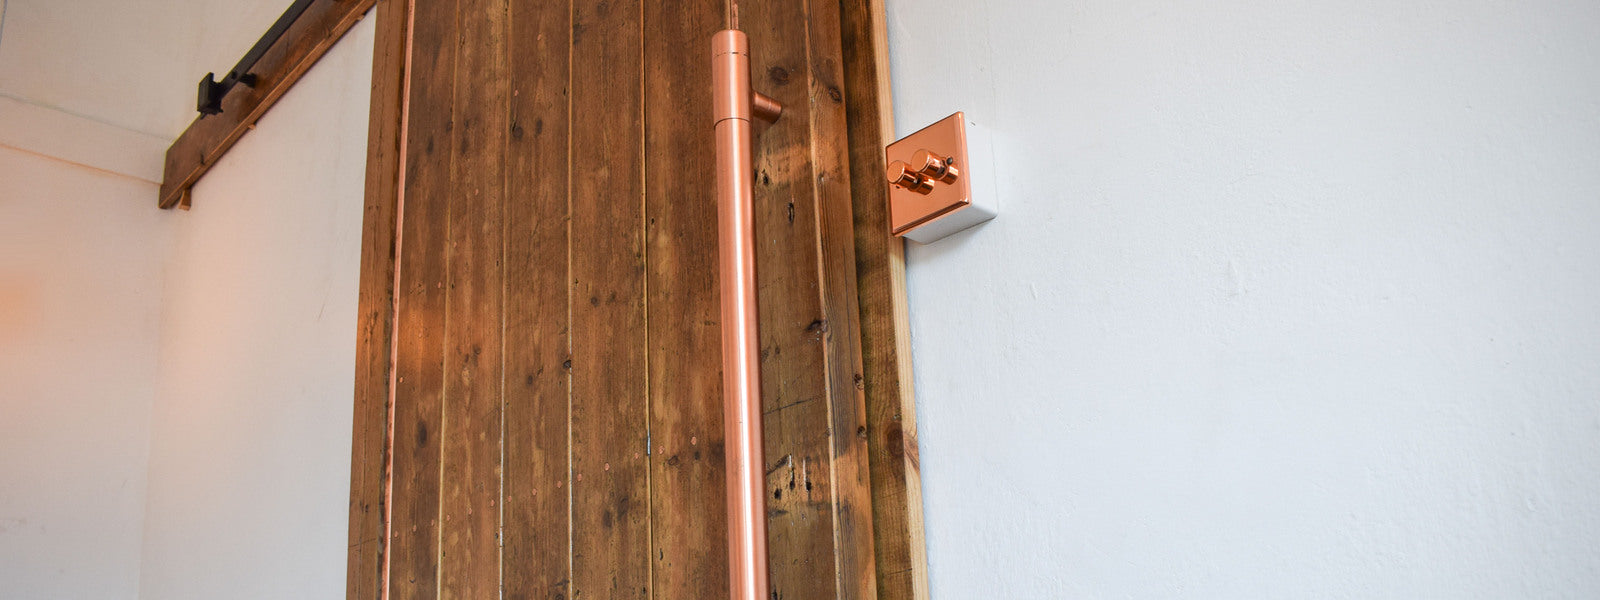 reclaimed wooden door completed with copper handle